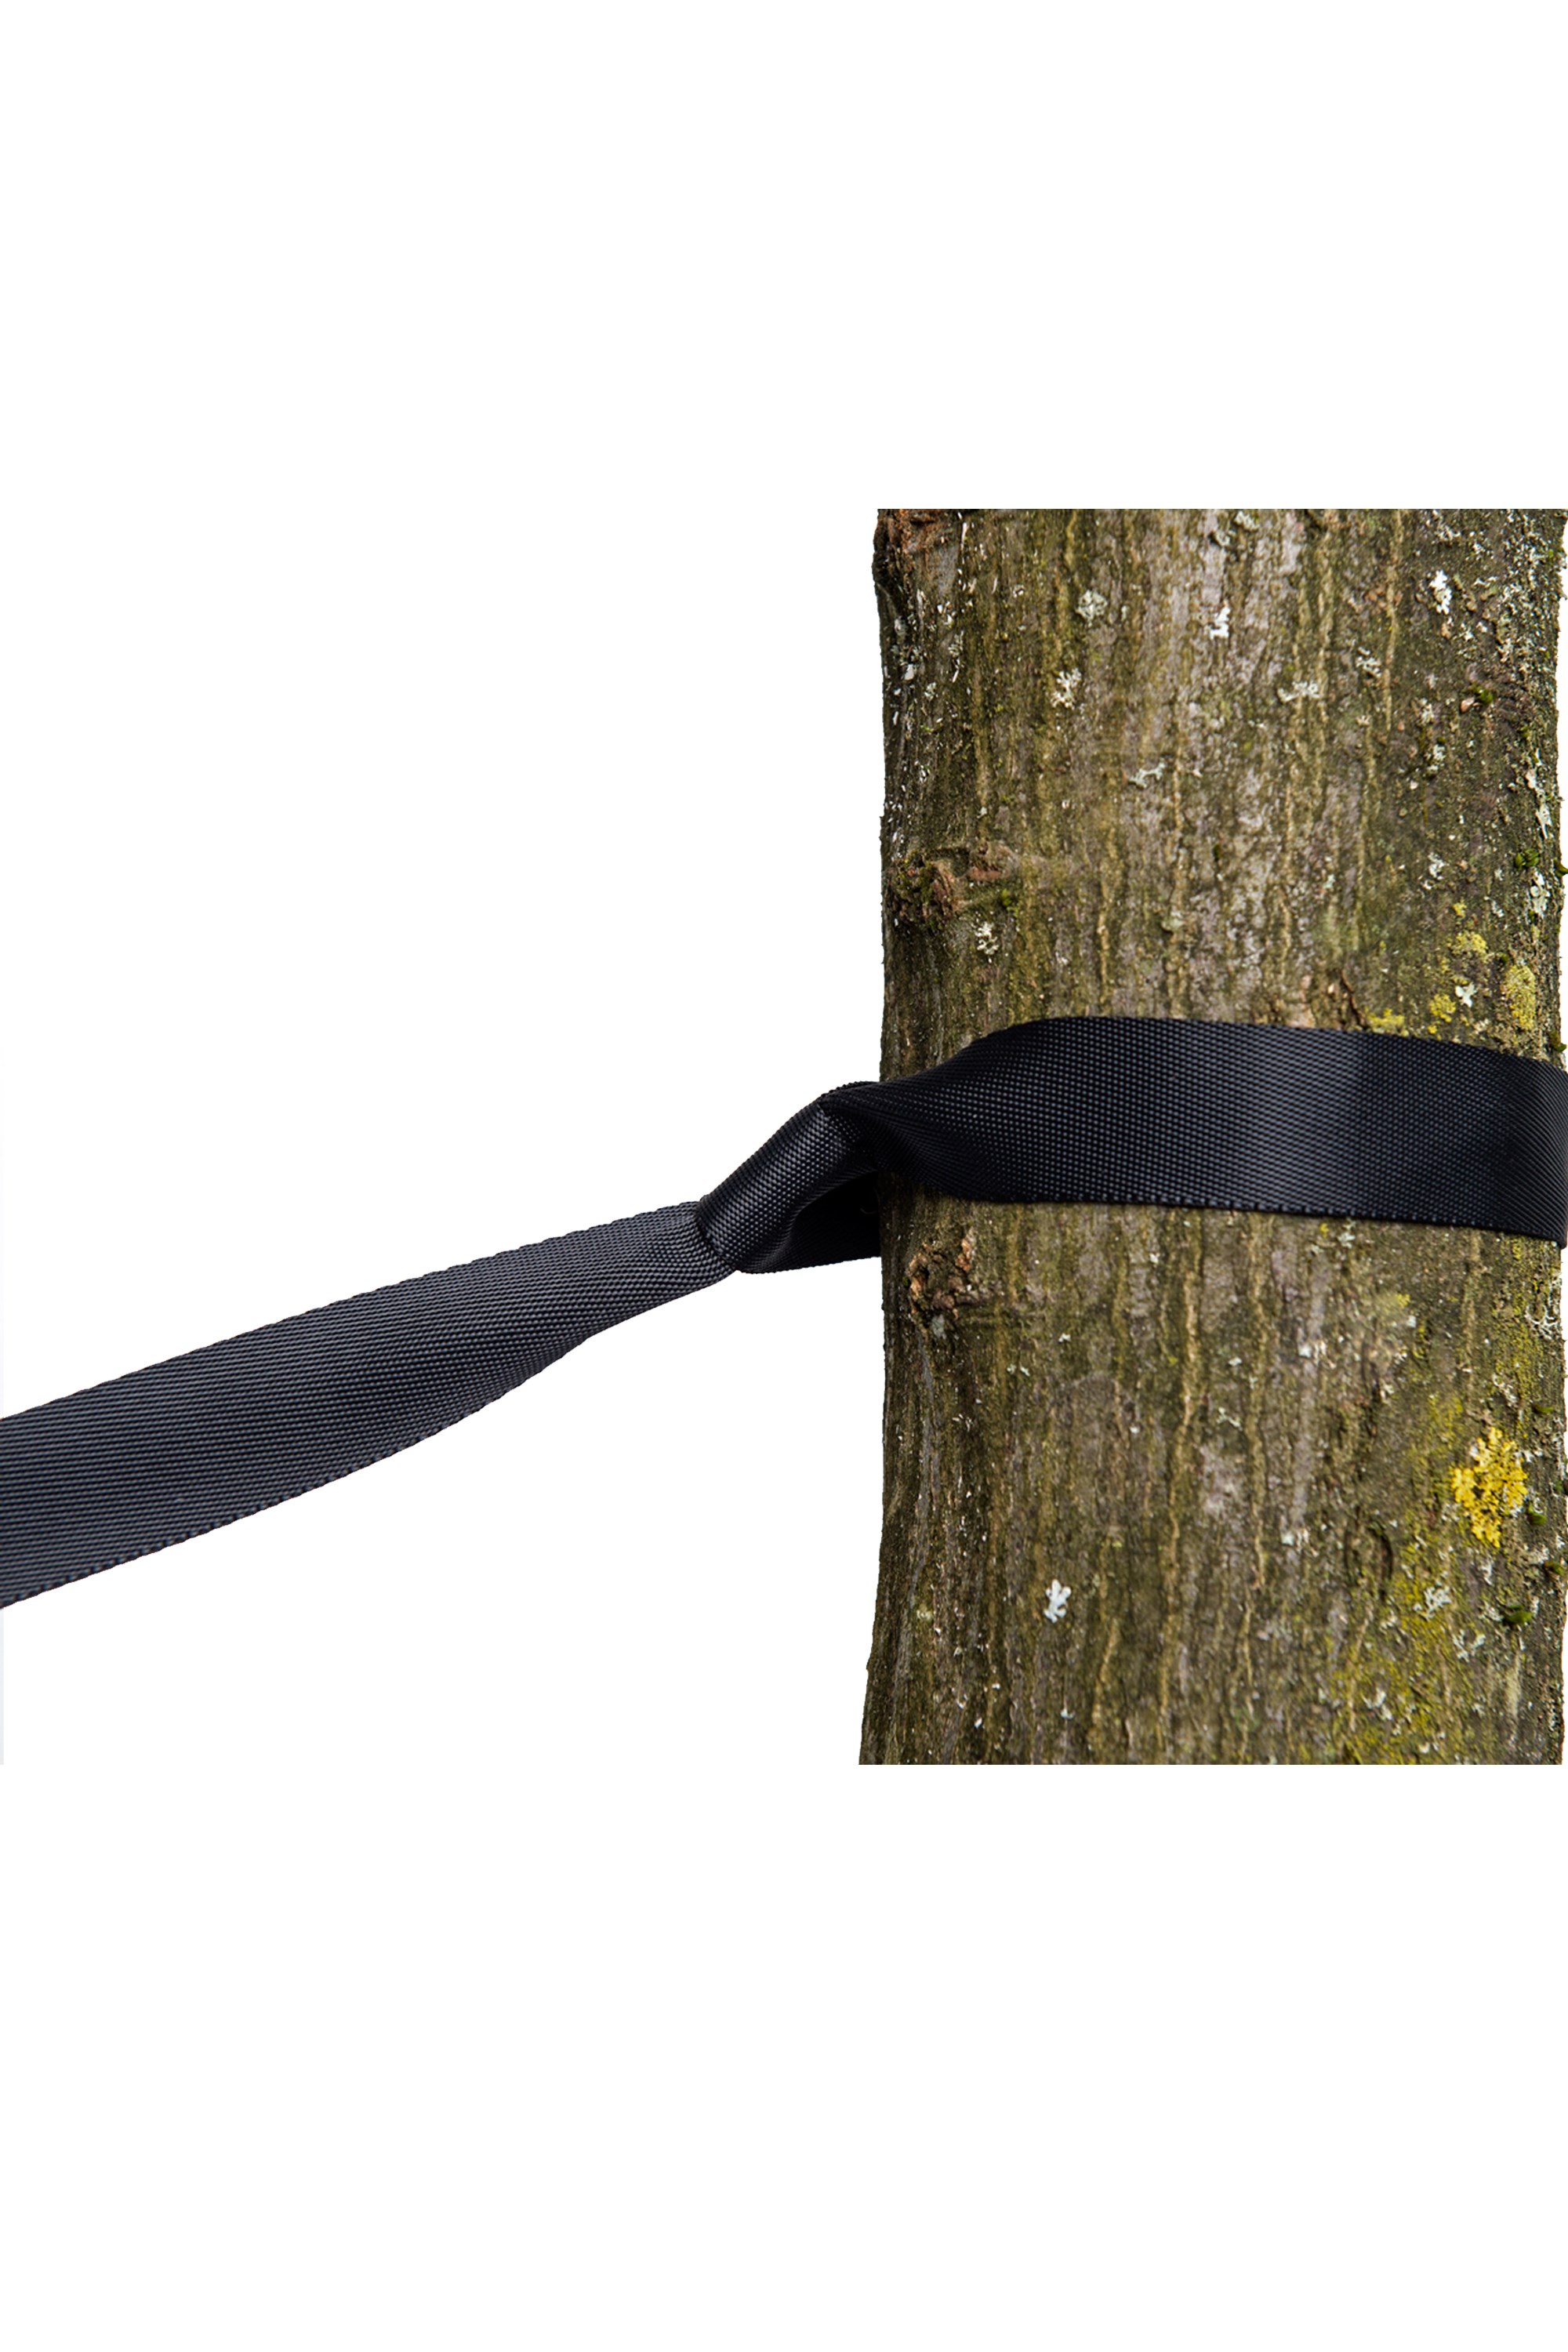 Tree Hugger Suspension Set For Hammocks -